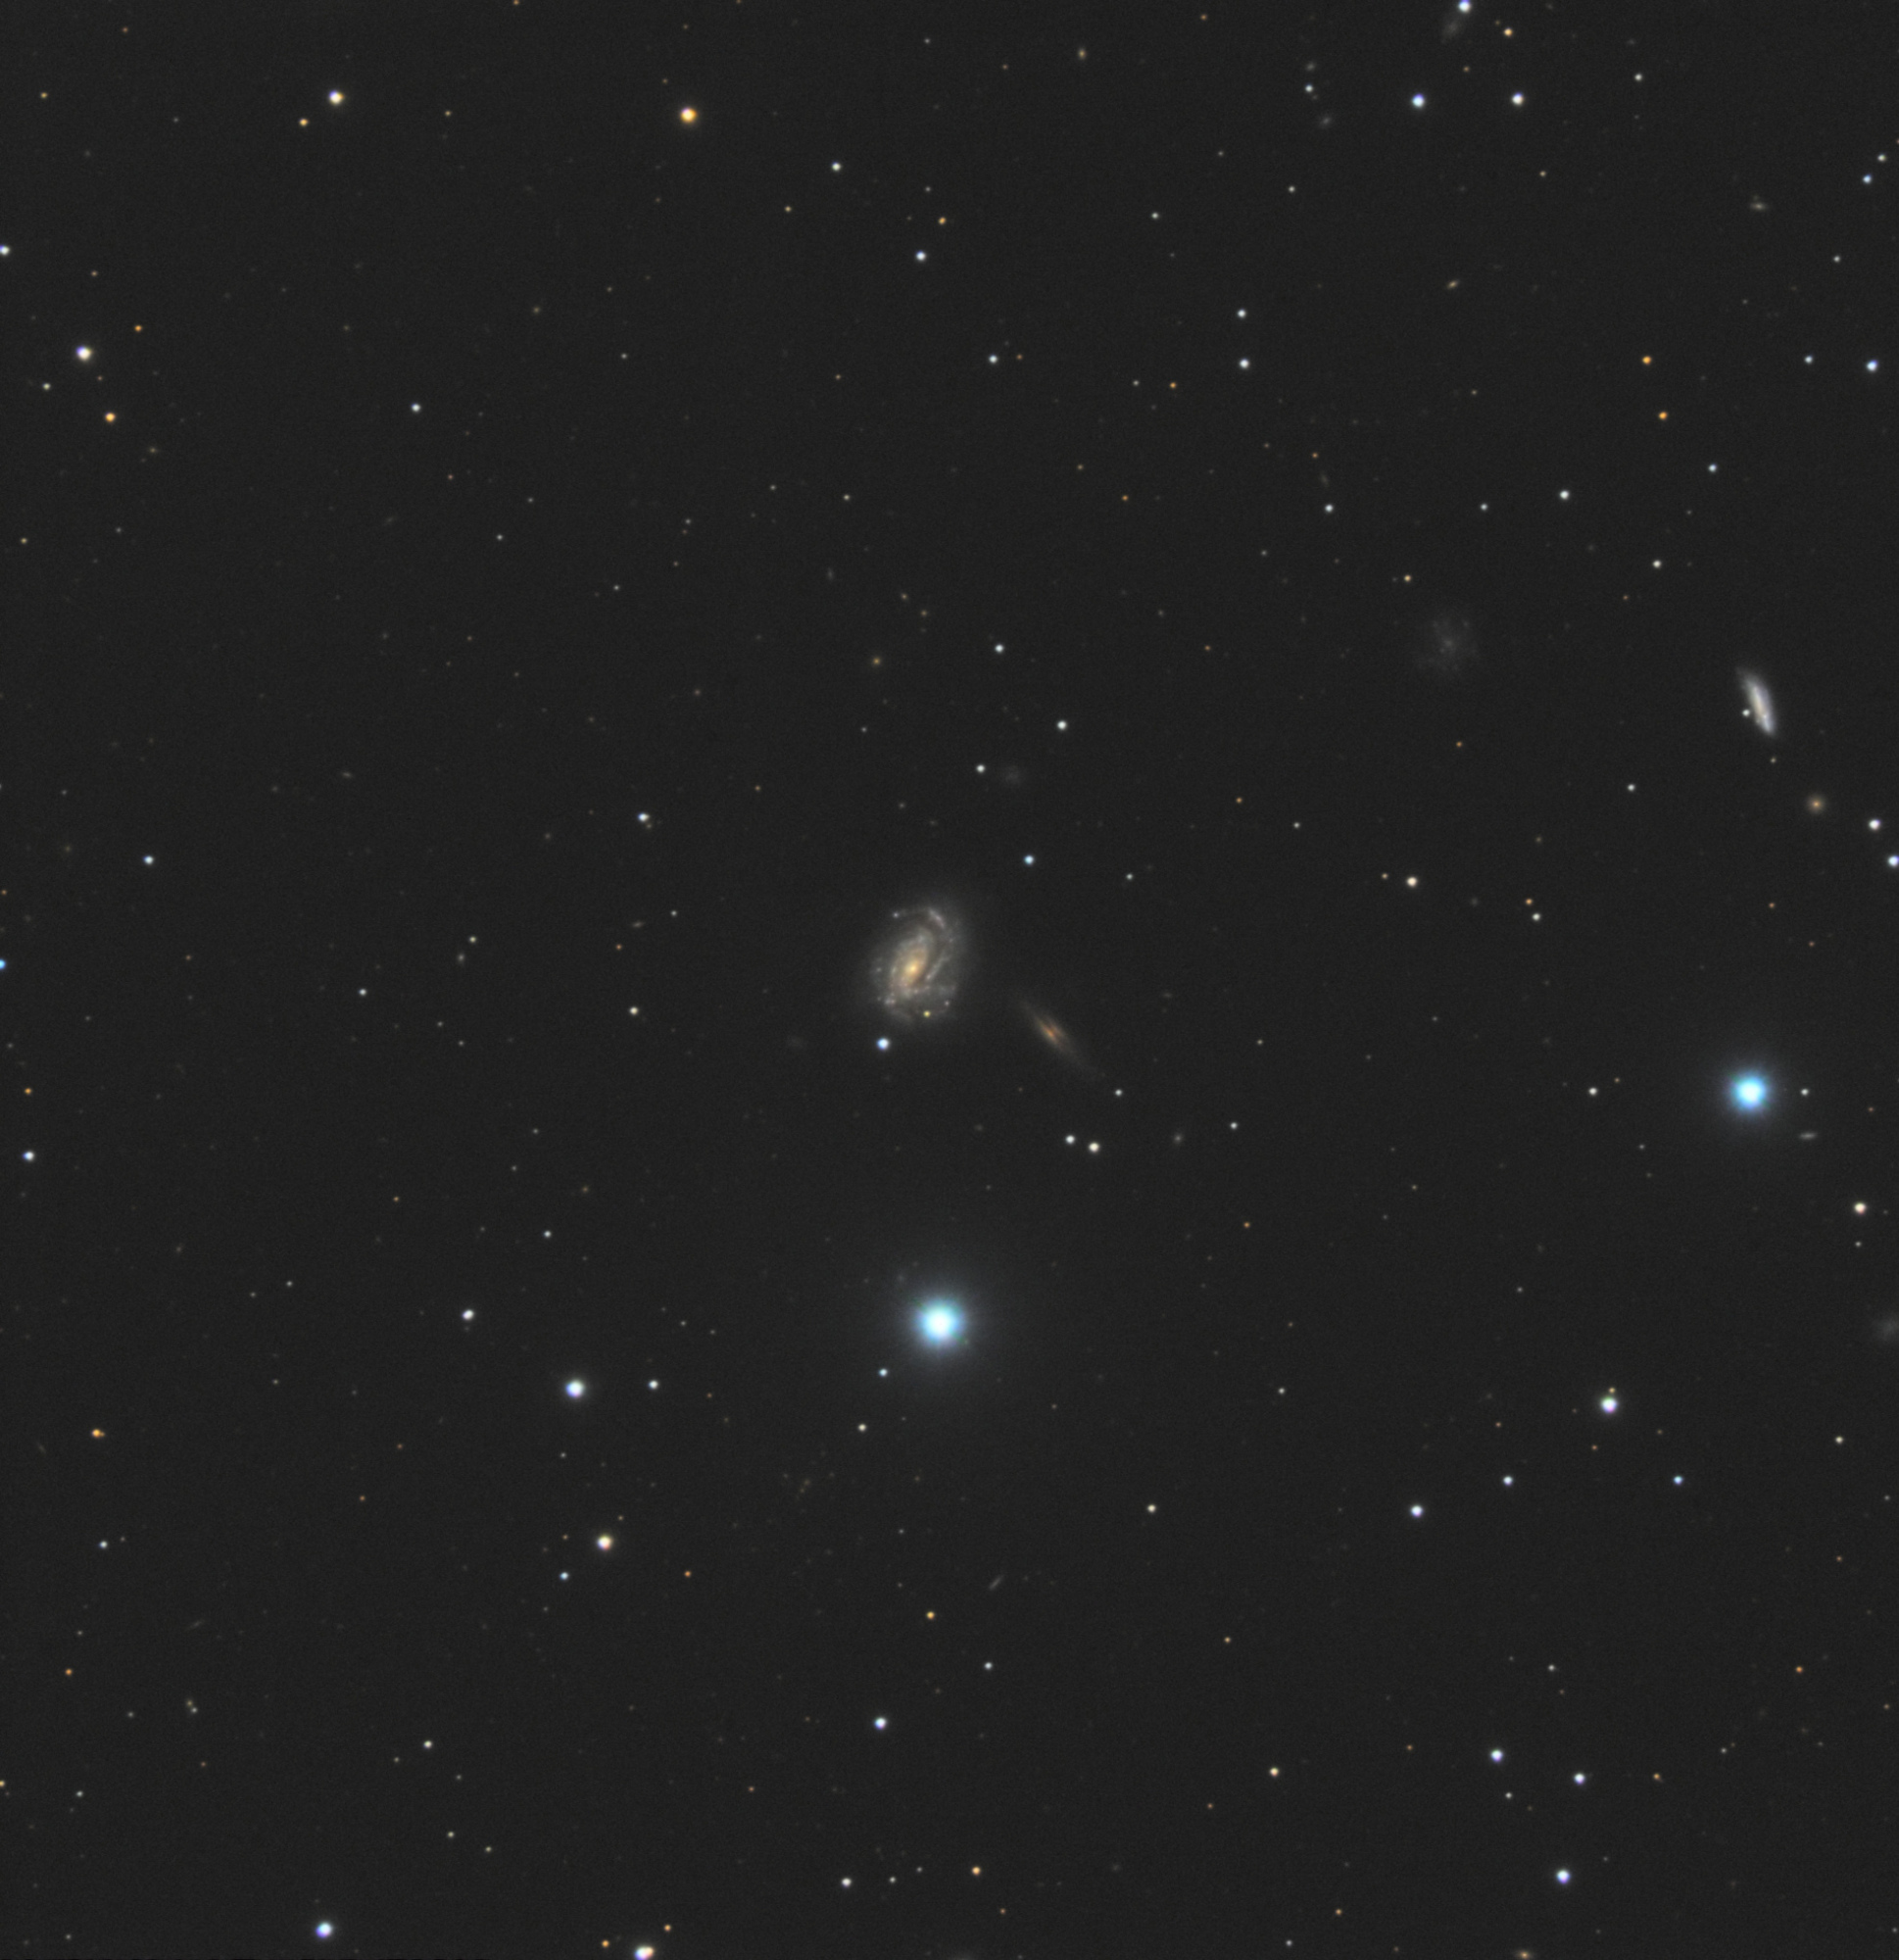 5c643c4b81dfd_NGC877.thumb.jpg.2af6e077576c8141600d0e3a6dc95e8a.jpg